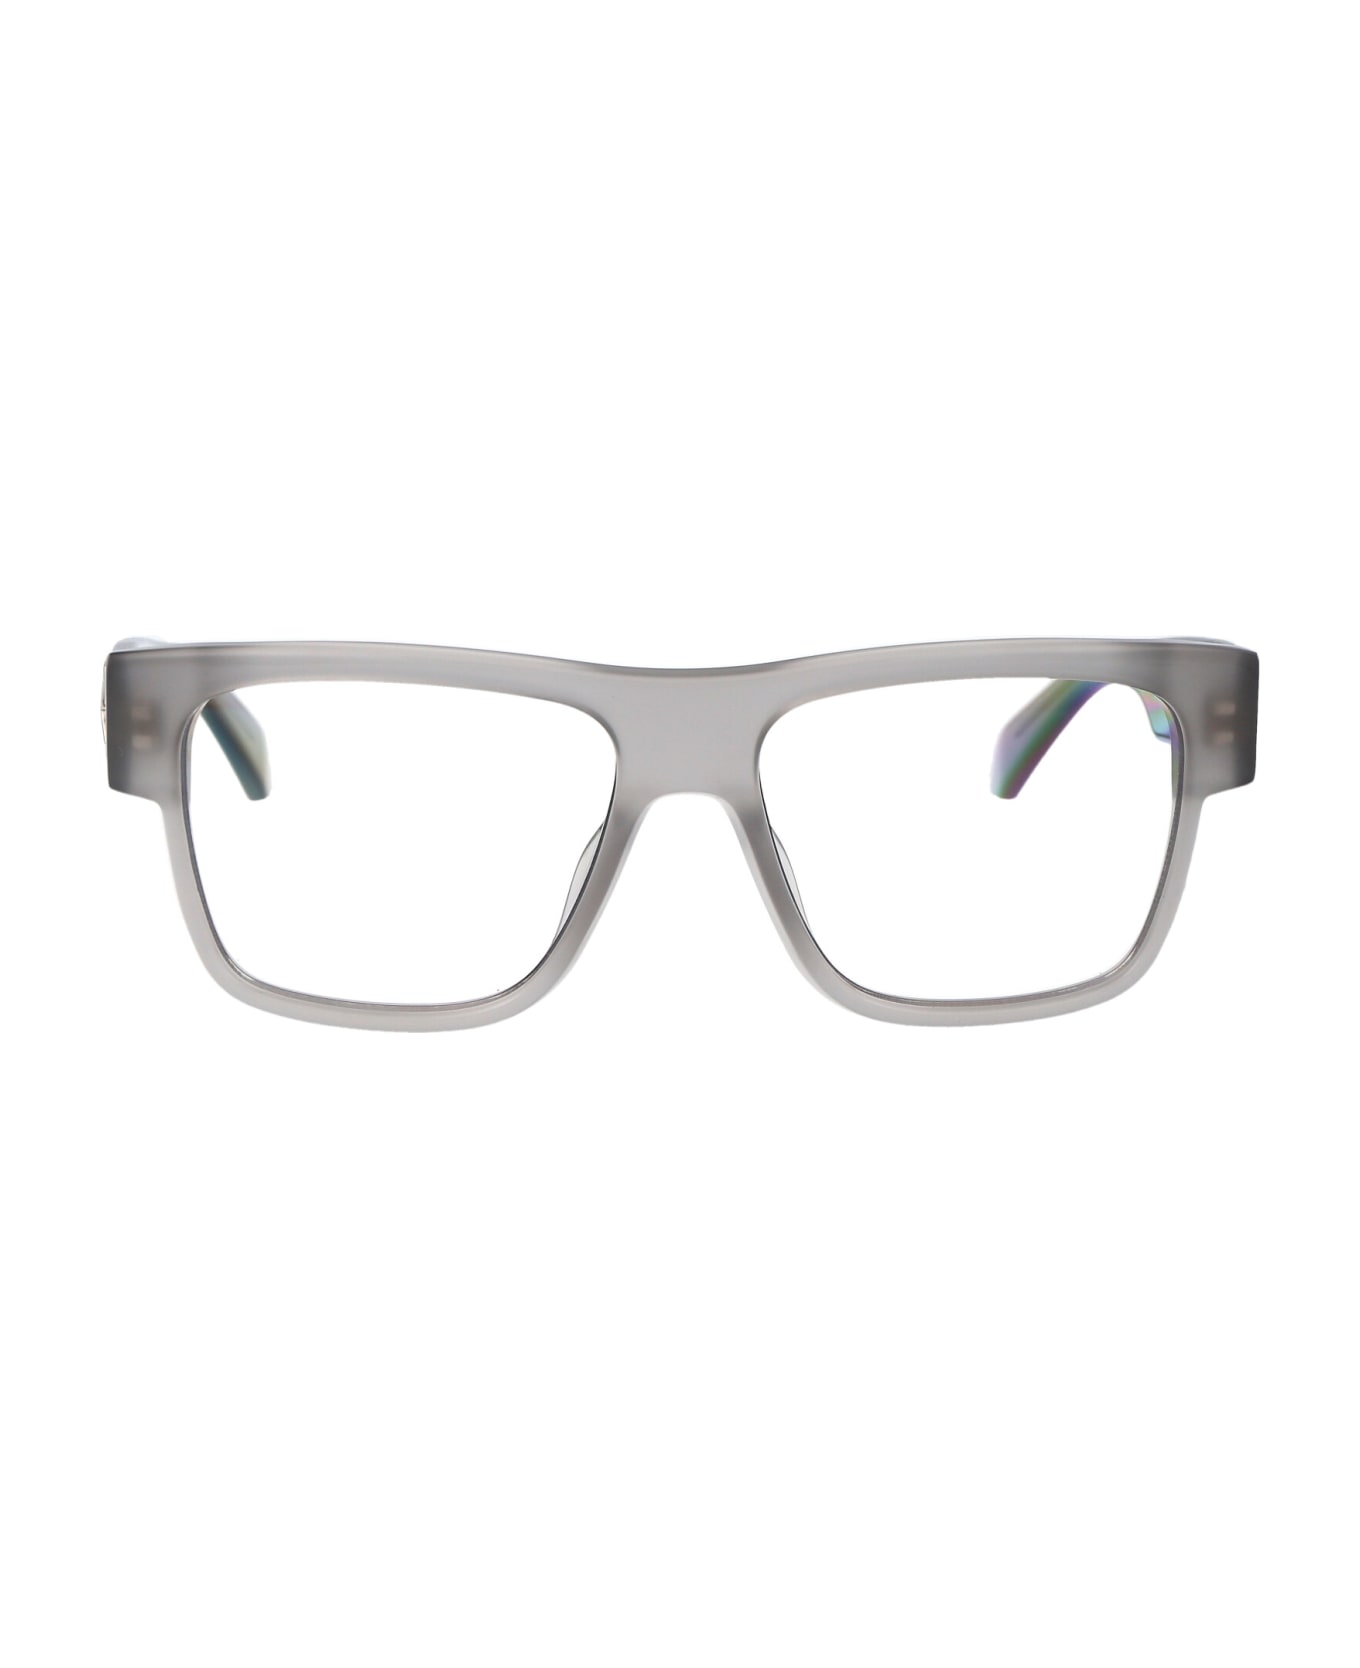 Off-White Optical Style 60 Glasses - 0900 GREY  アイウェア